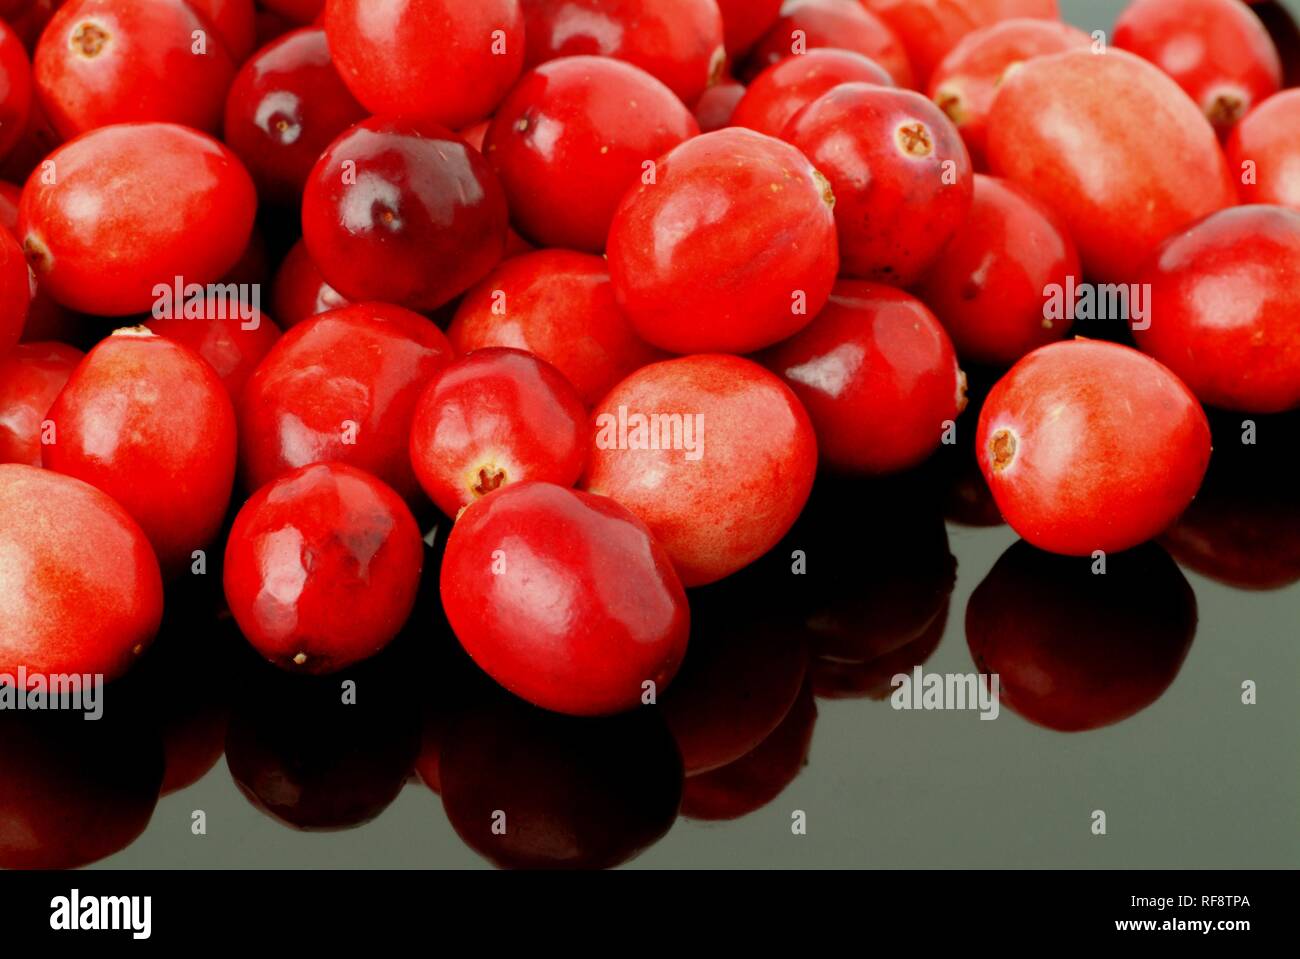 American Cranberries or Bearberries (Vaccinium macrocarpon) Stock Photo